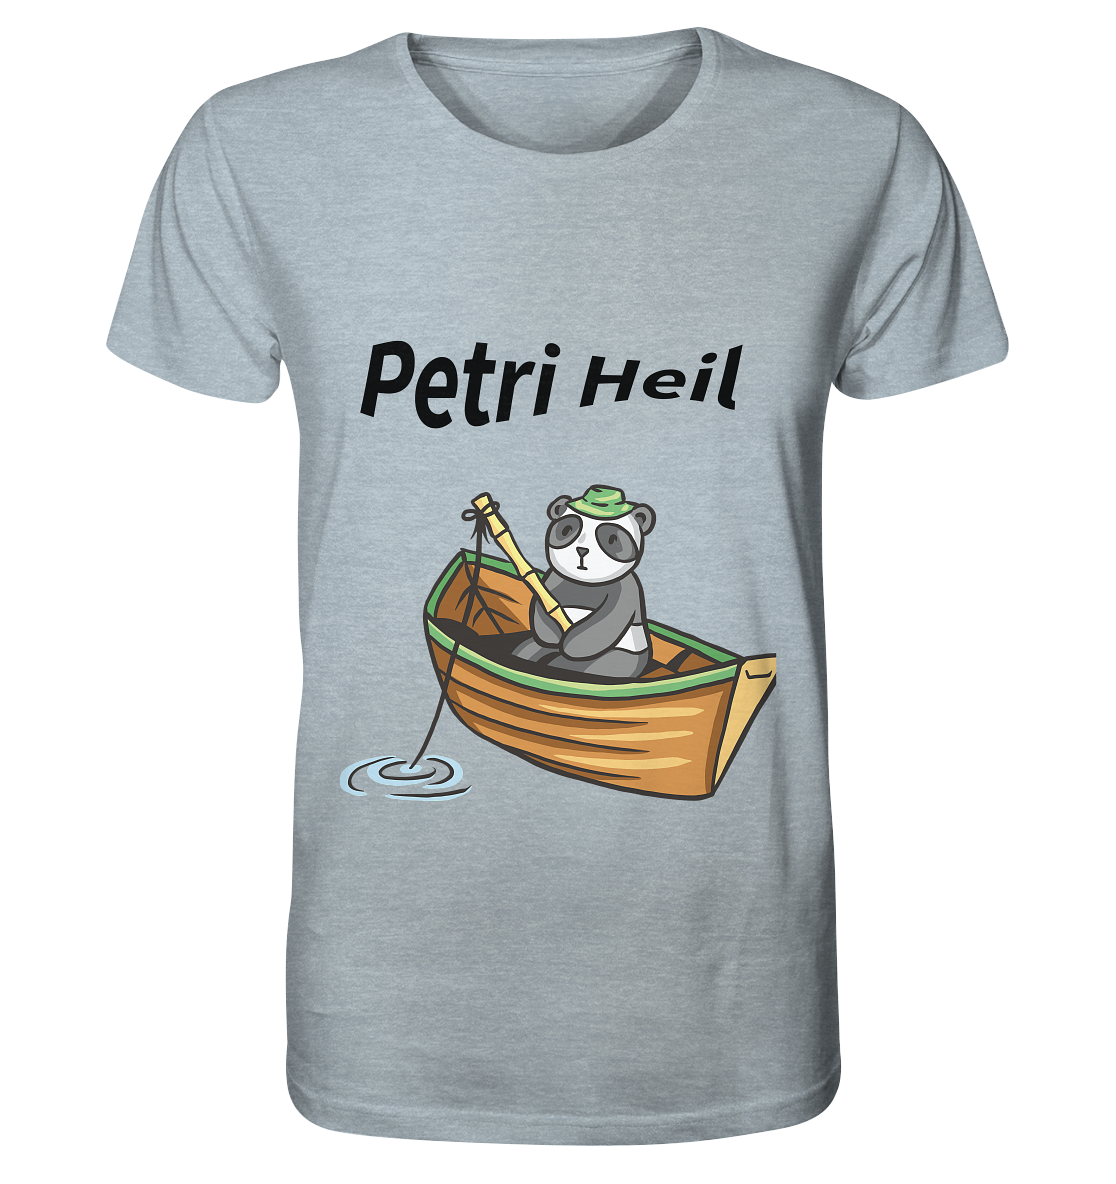 Petri-Heil-Bär - Organic Shirt (meliert) - Online Kaufhaus München